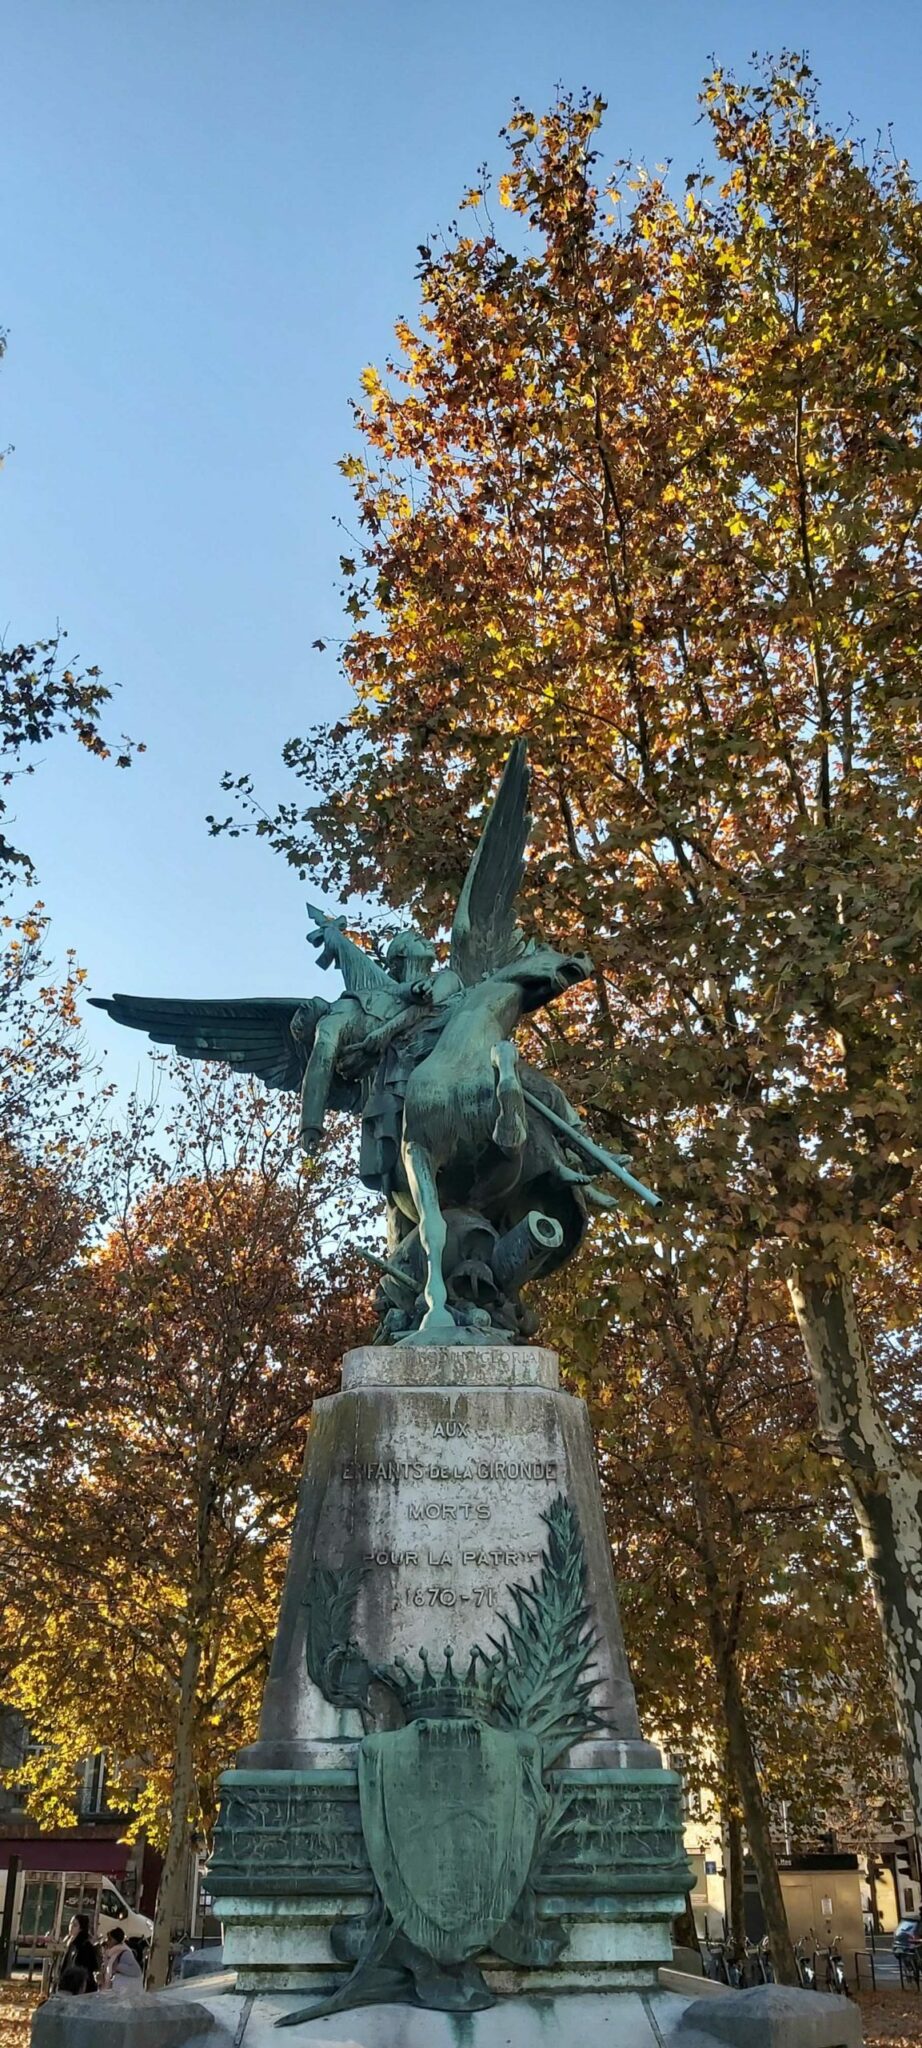 Sur la place de la République, un monument rend hommage aux enfants de la Gironde morts pendant la guerre de 1870 contre l’empire prussien.